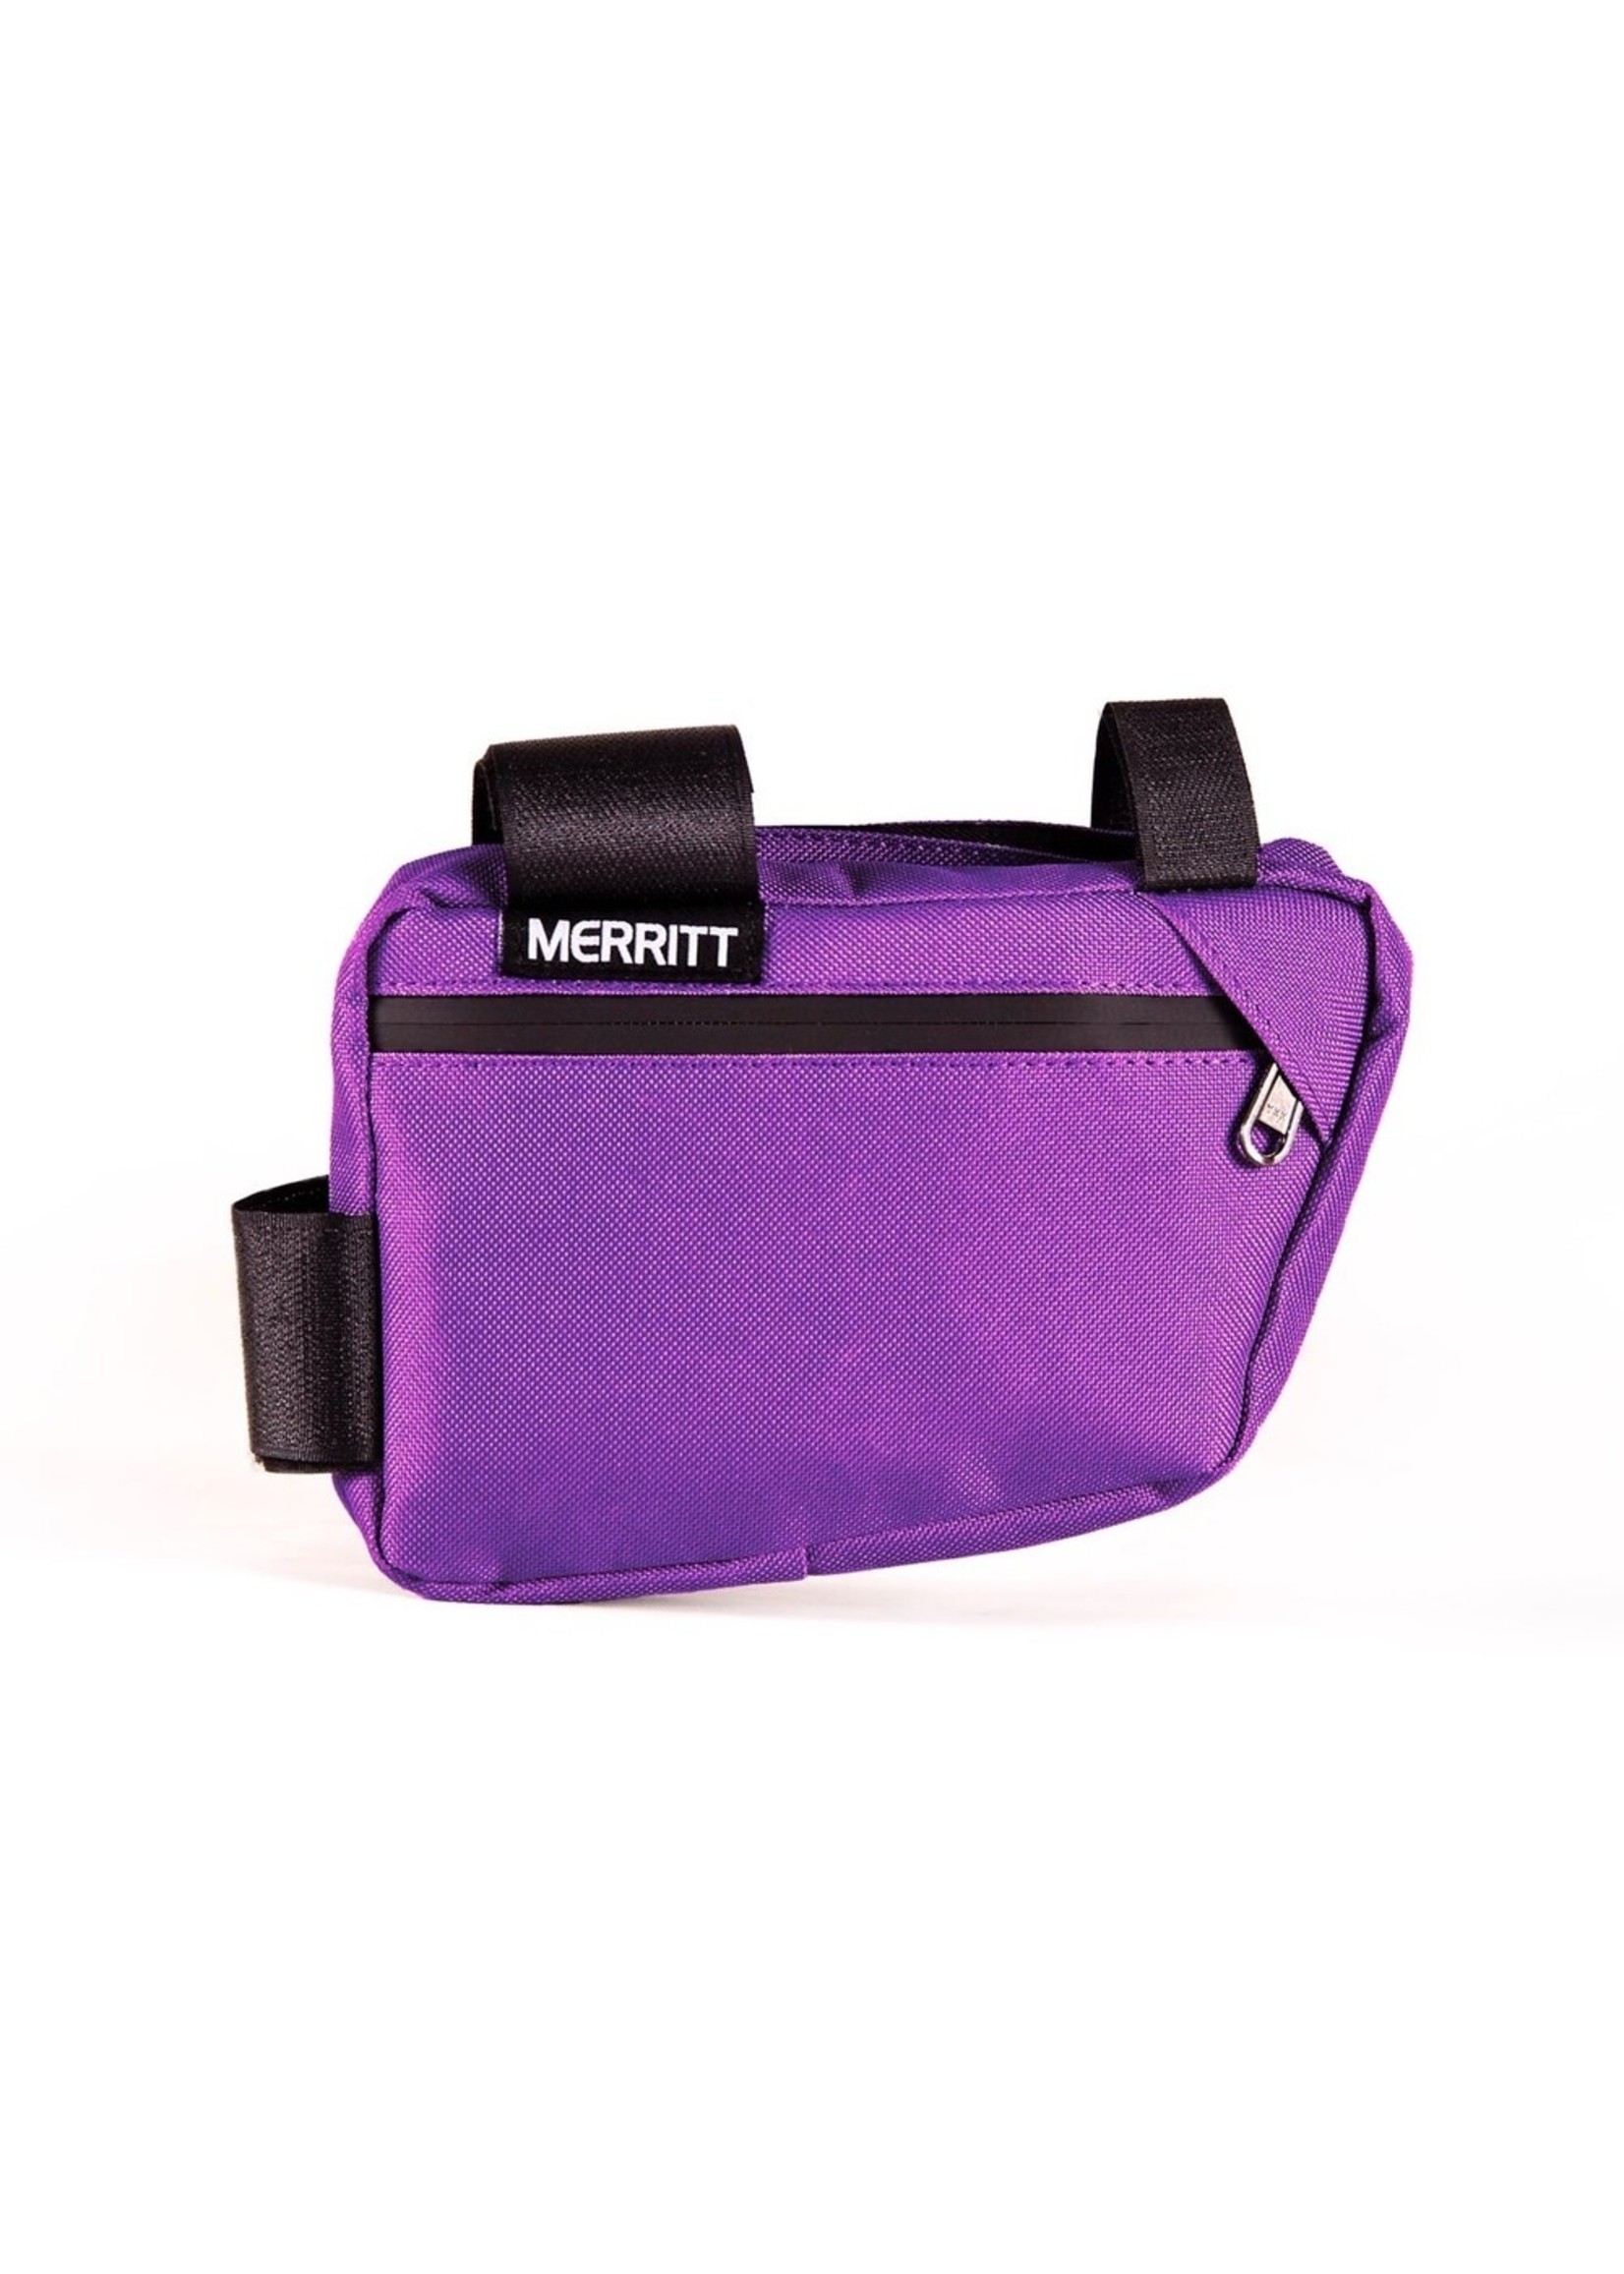 Merritt Merritt Corner Pocket Frame Bag,